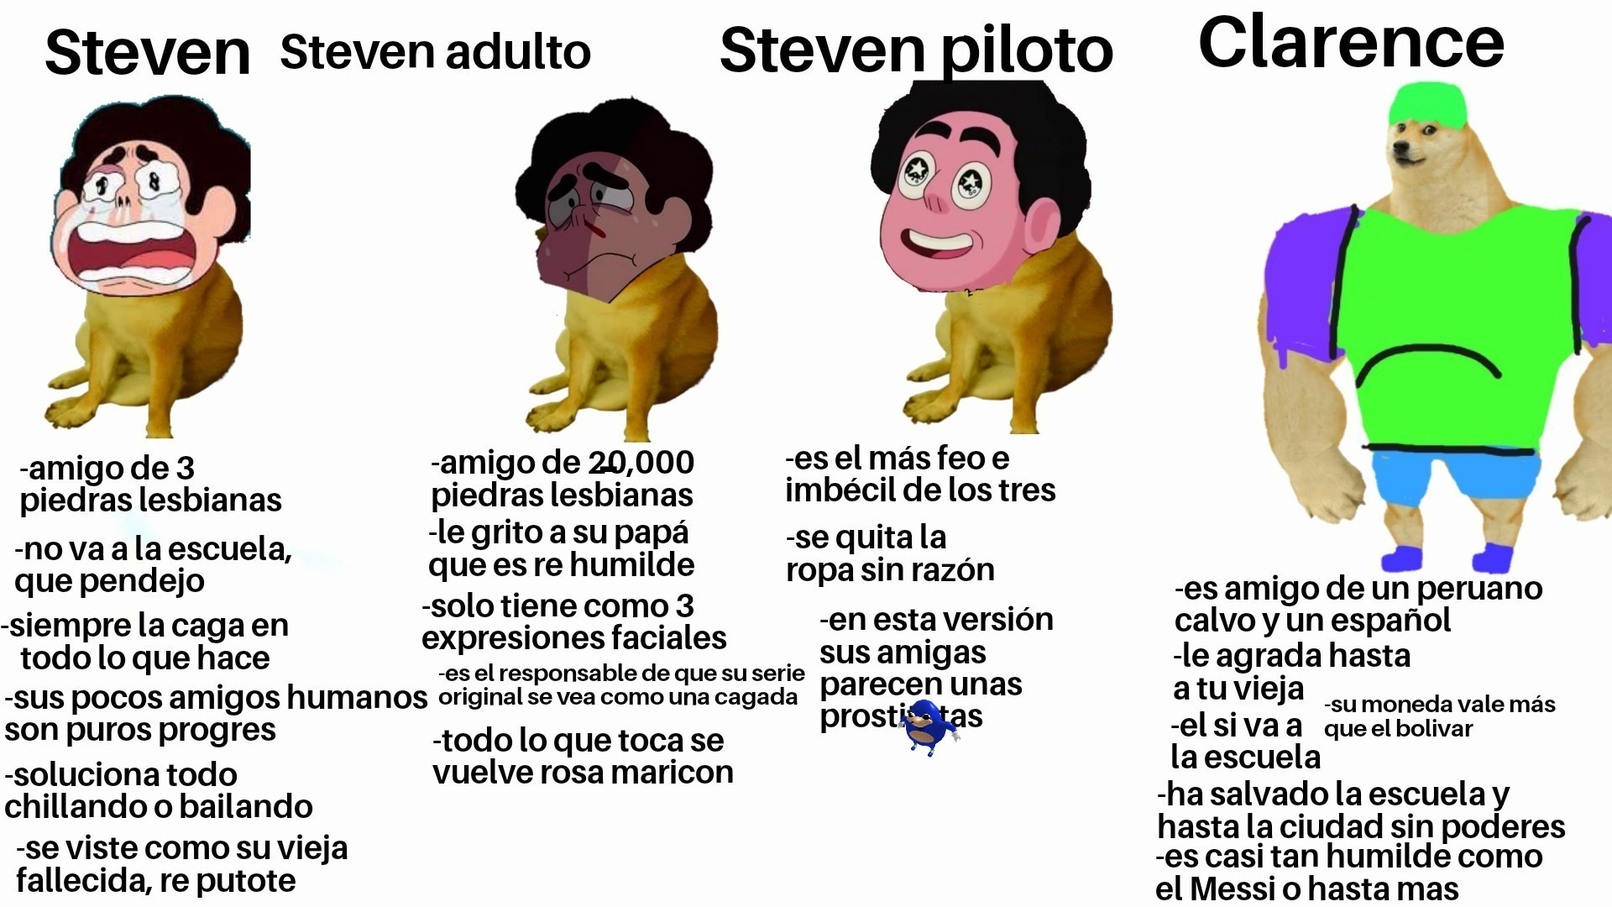 Esteban - meme